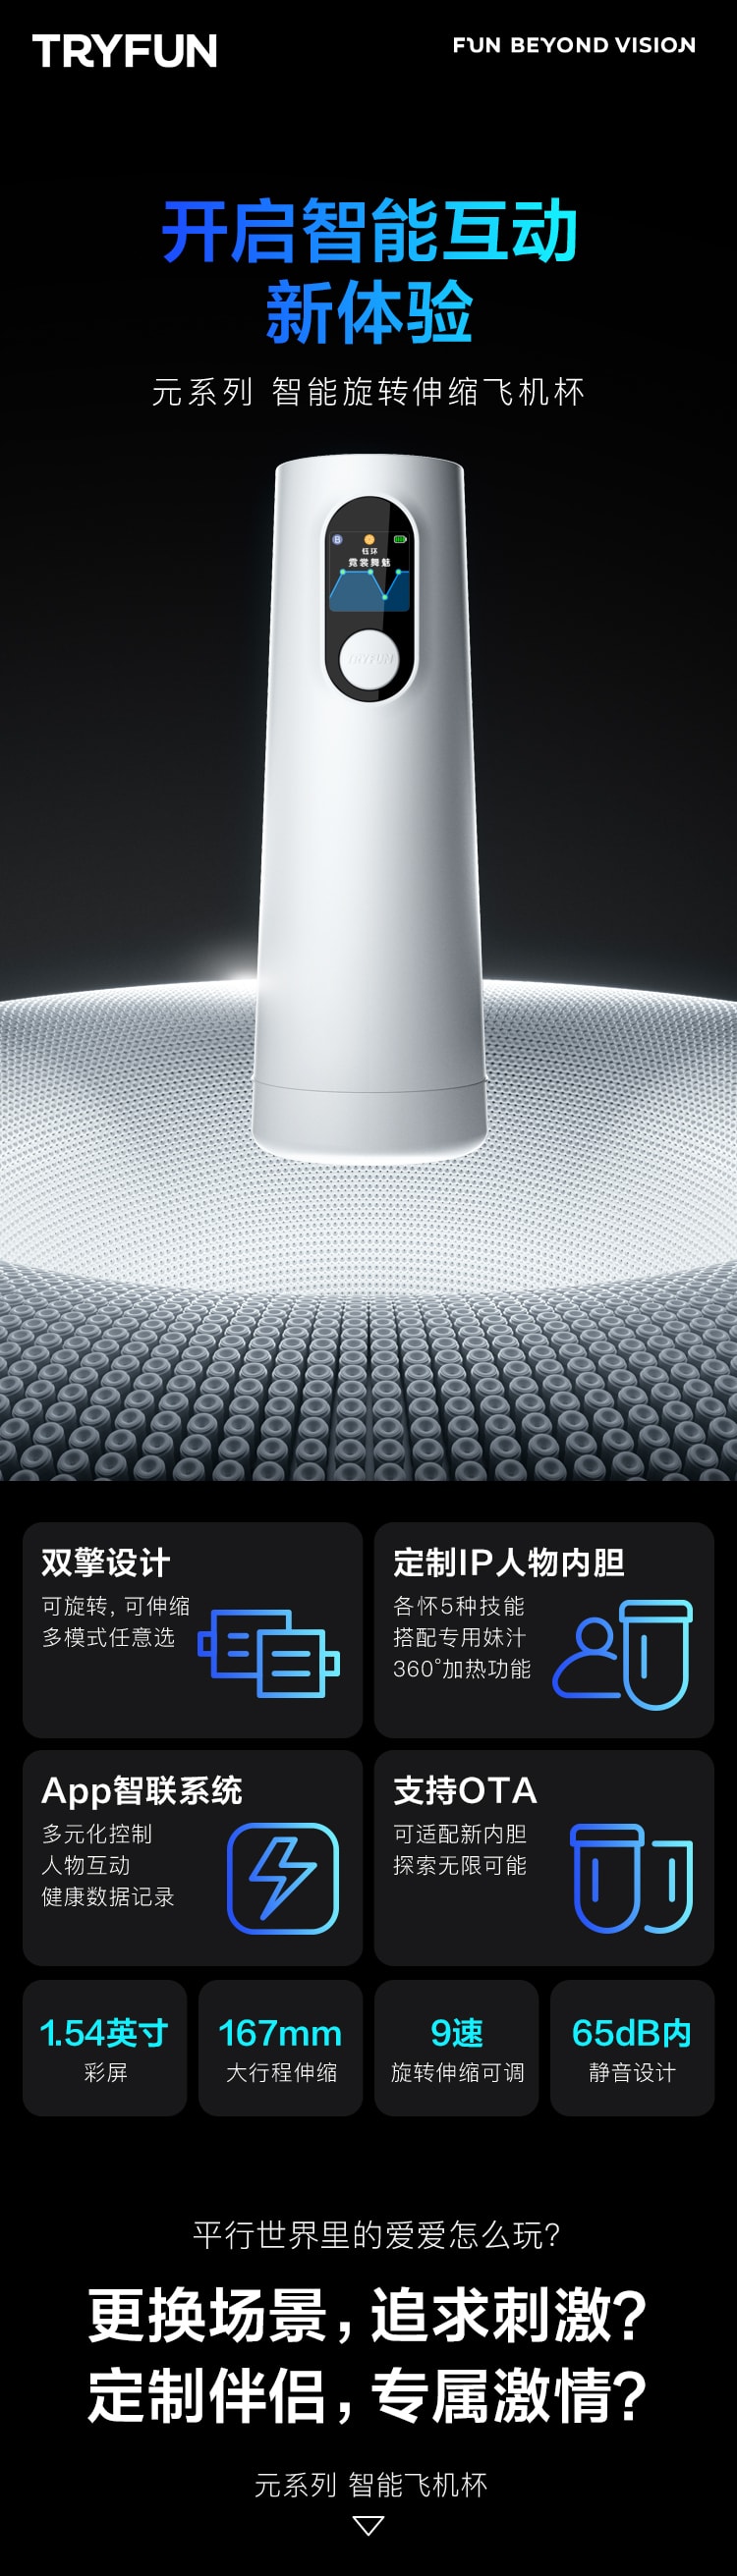 【美国现货】 中国网易春风元系列智能飞机杯白色 - 飞机杯+妲小己IP内胆+润滑液